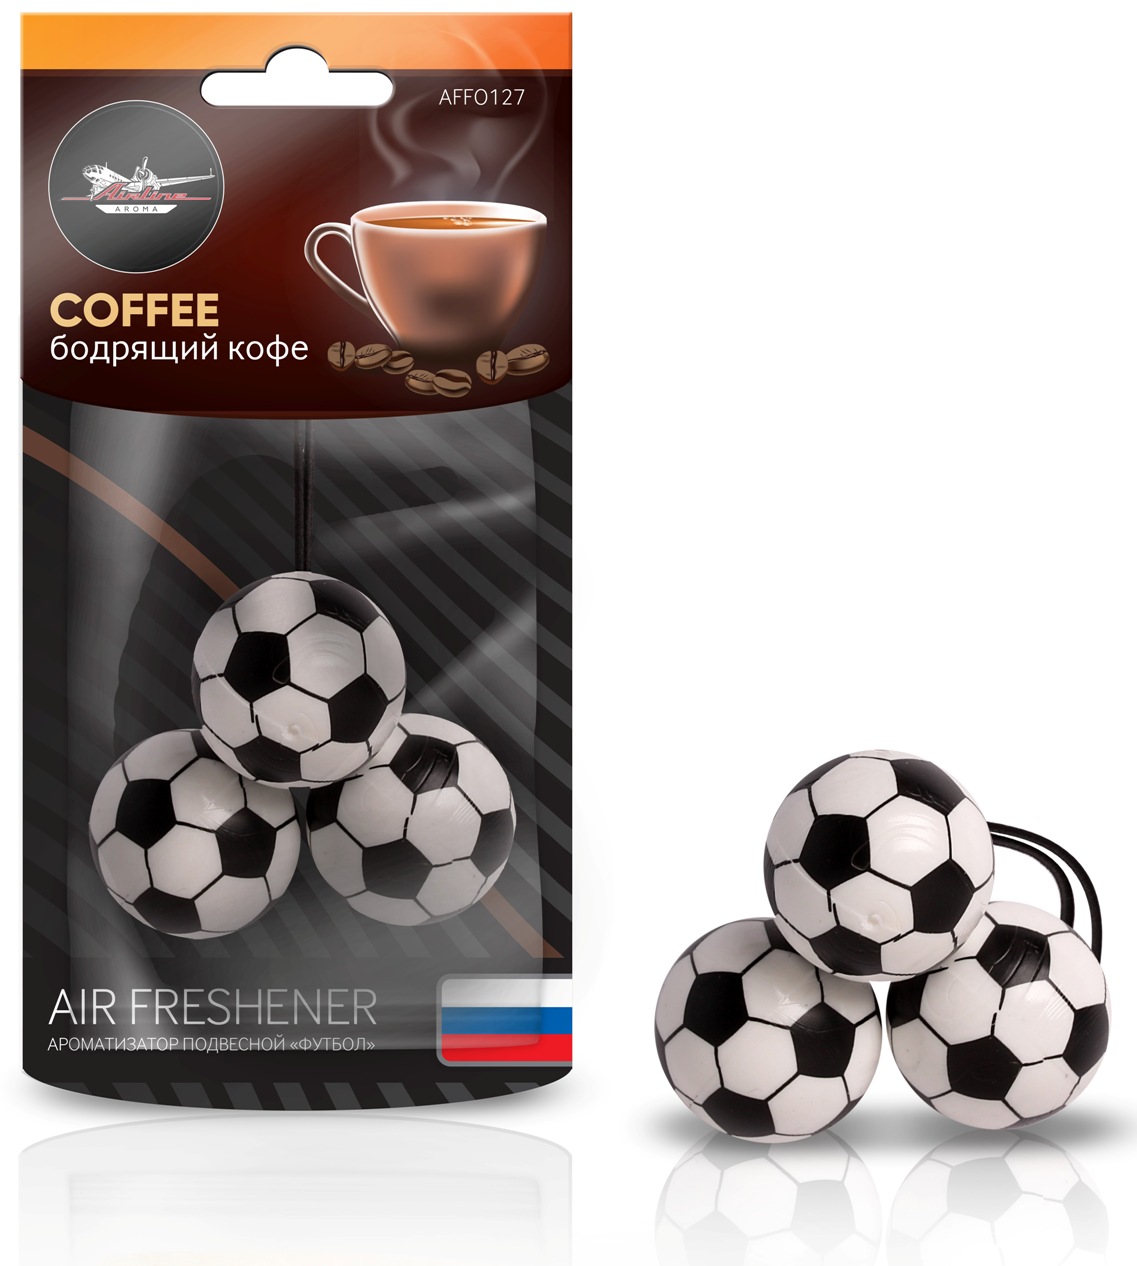 Ароматизатор подвесной Футбол бодрящий кофе (AFFO127)(доставка 2-3 часа)